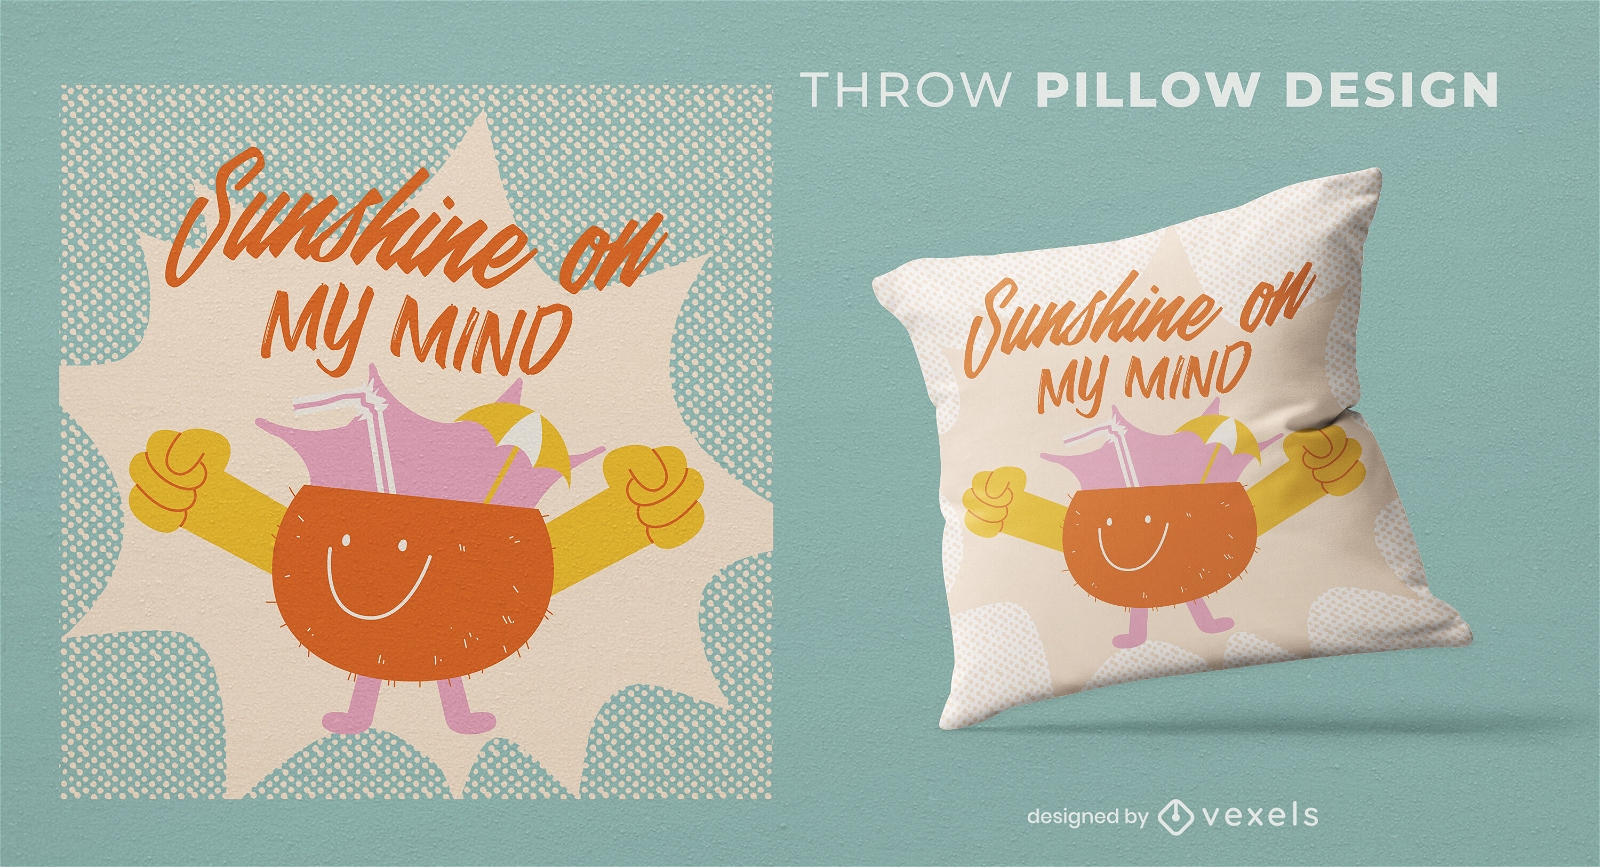 Sunshine juice throw pillow design